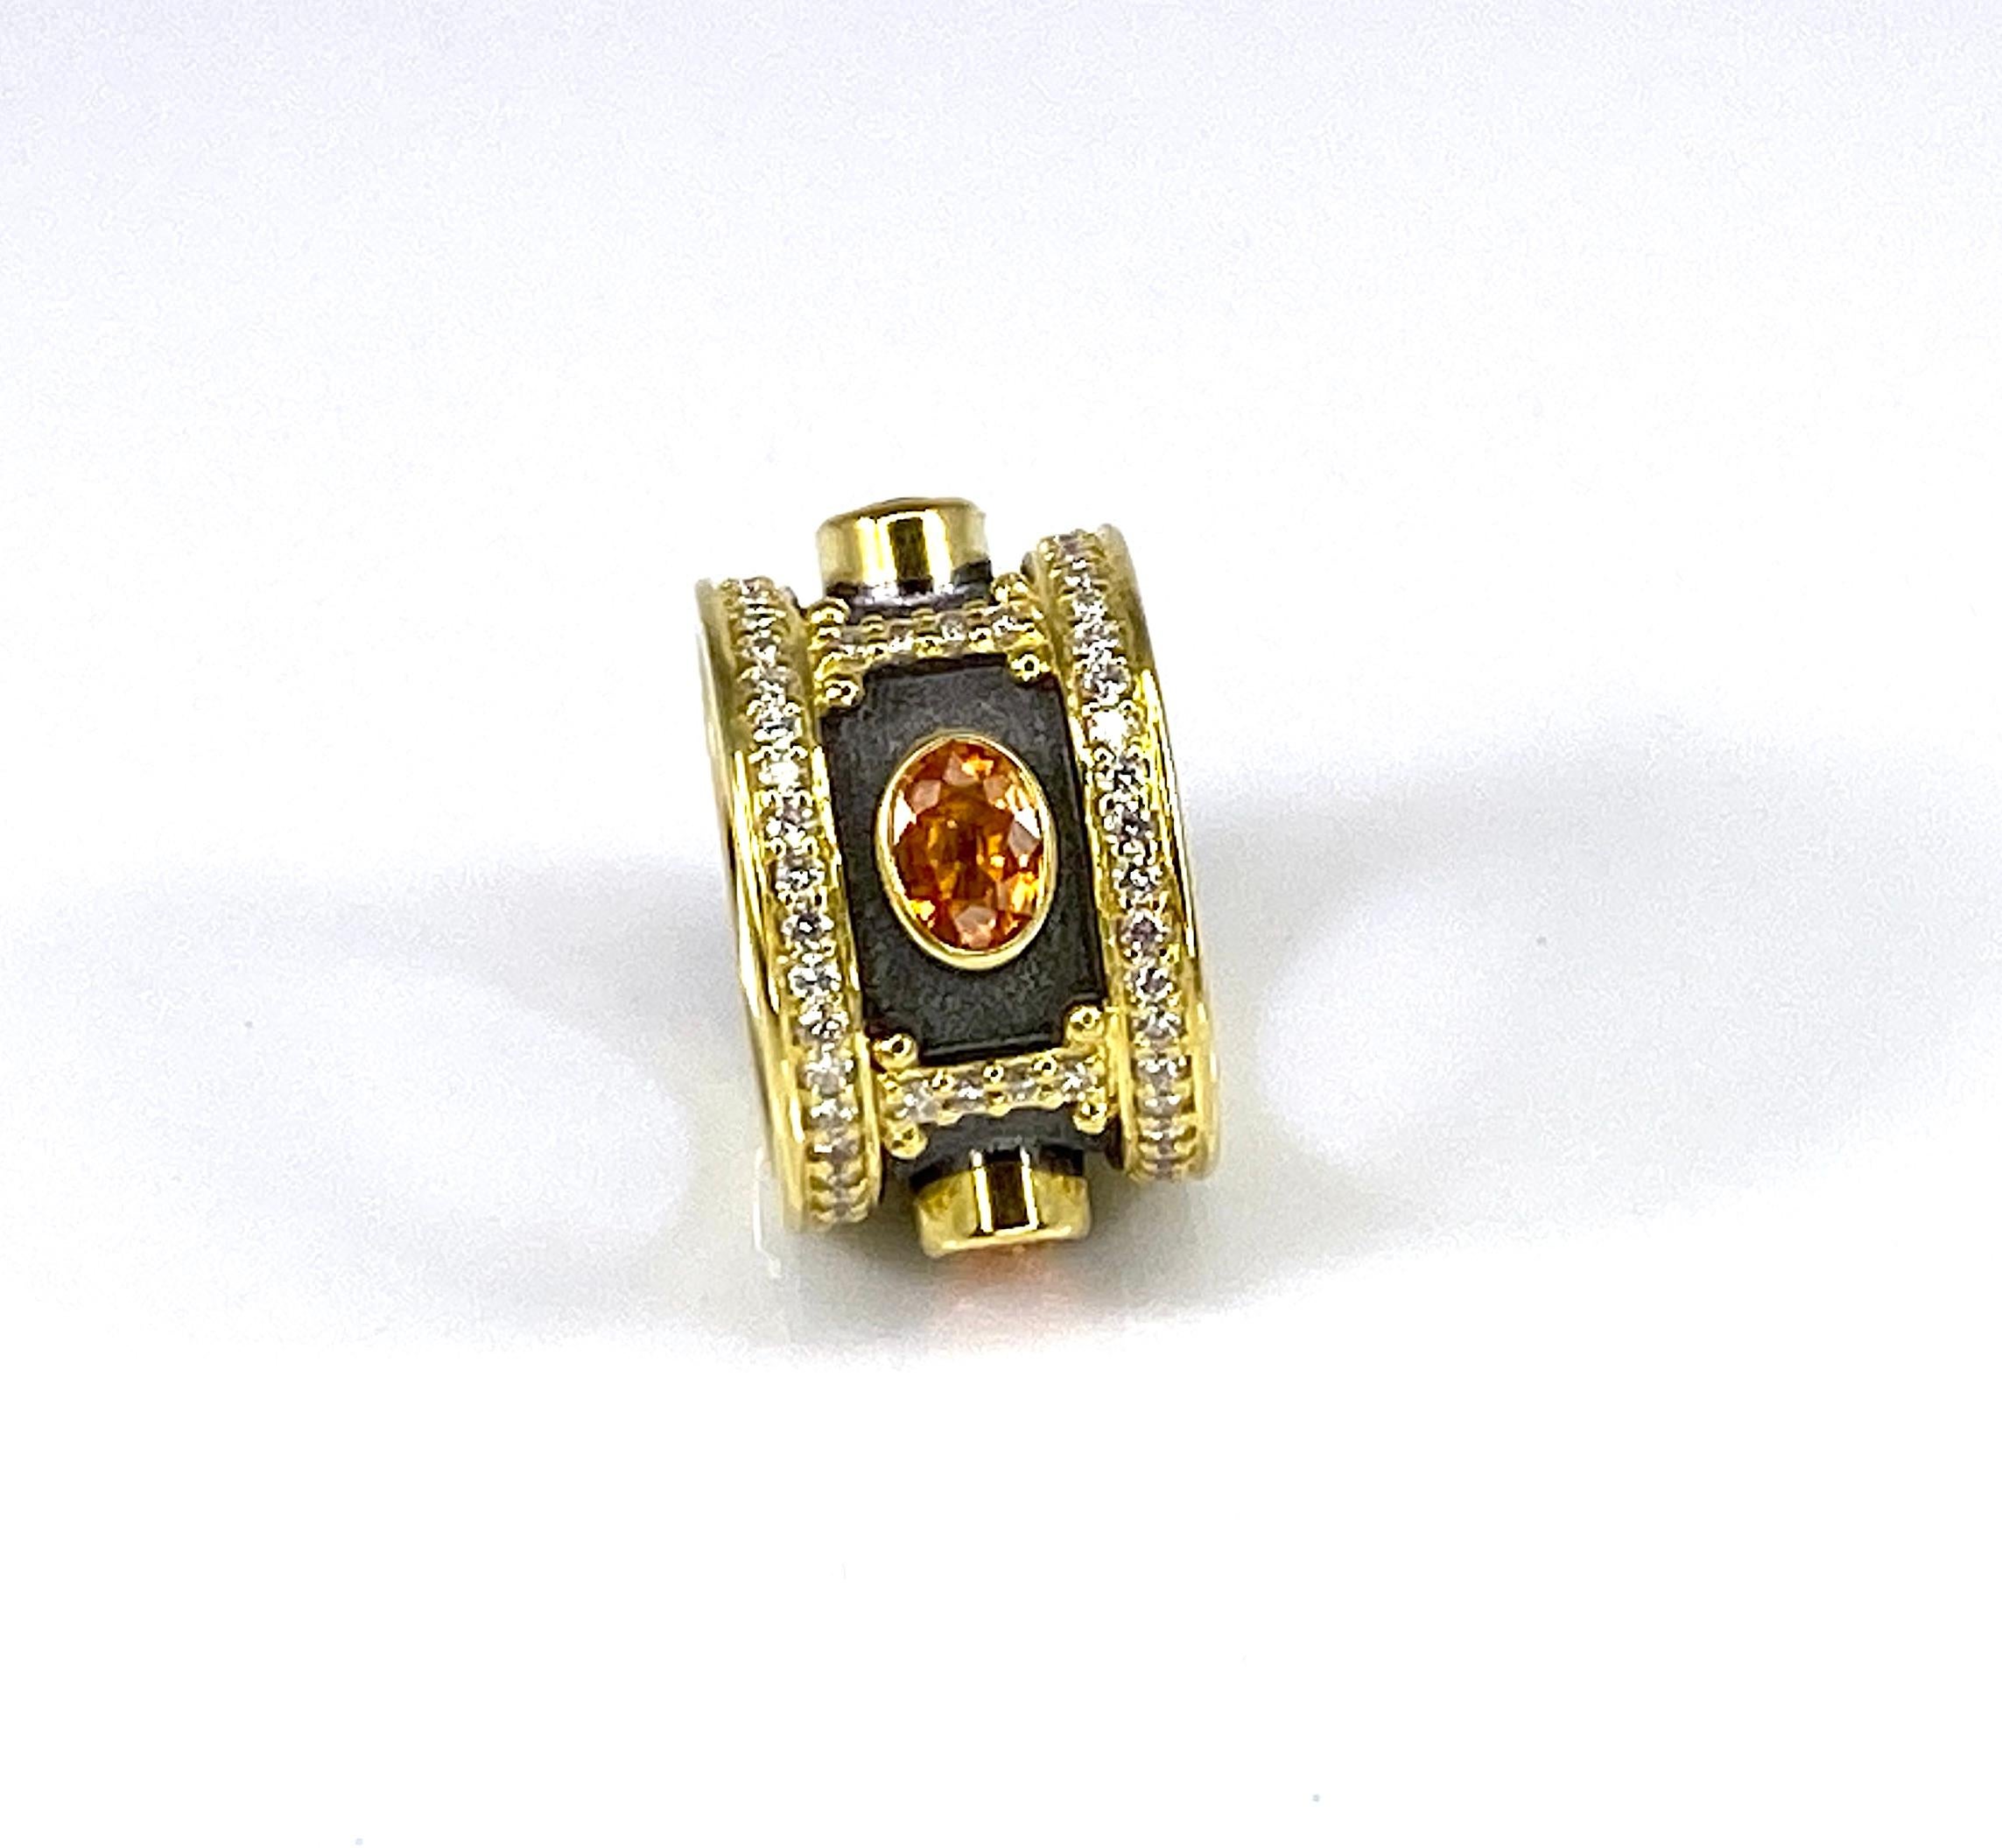 Das ist wunderschön S.Georgios Designer 18 Karat massivem Gelbgold Wide Band Ring alle handgefertigt in Griechenland in der eleganten Look inspiriert von byzantinischen Ära. Der Ring ist stark verziert mit Granulationsdetails, 4 gelben Saphiren im